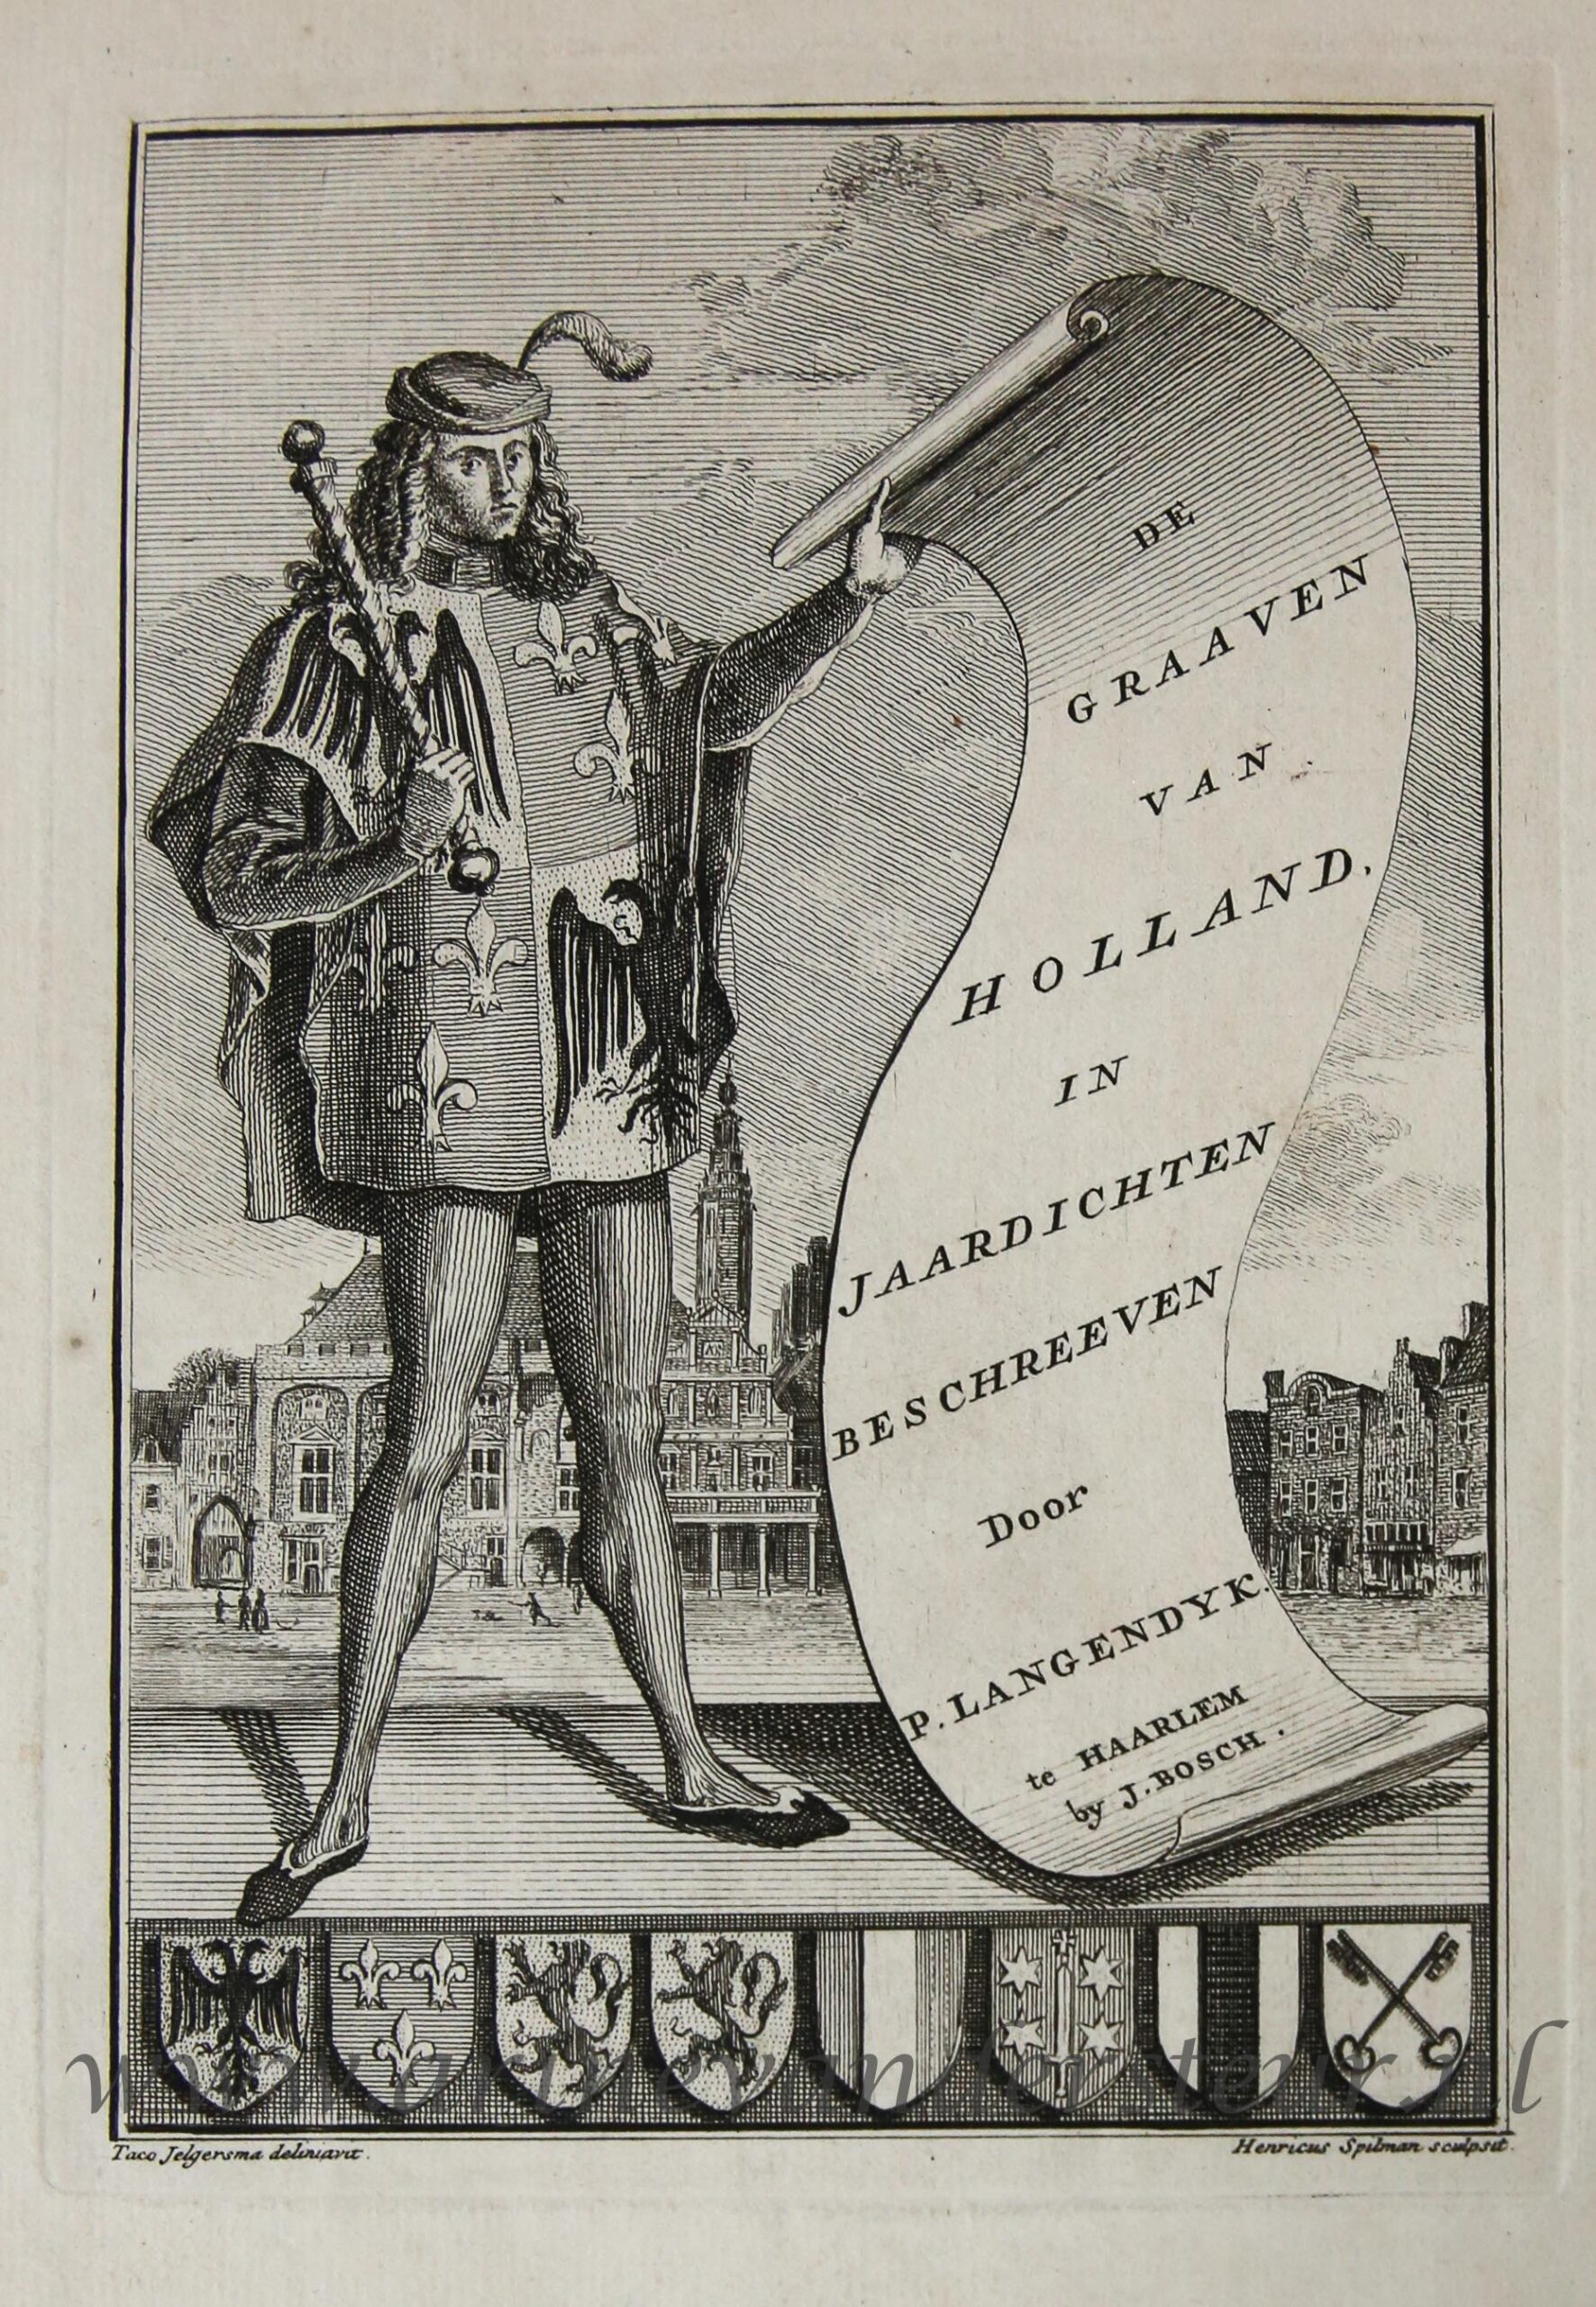 [Antique title page, 1745] Heraut voor het stadhuis van Haarlem [De Graaven van Holland], published 1745, 1 p.